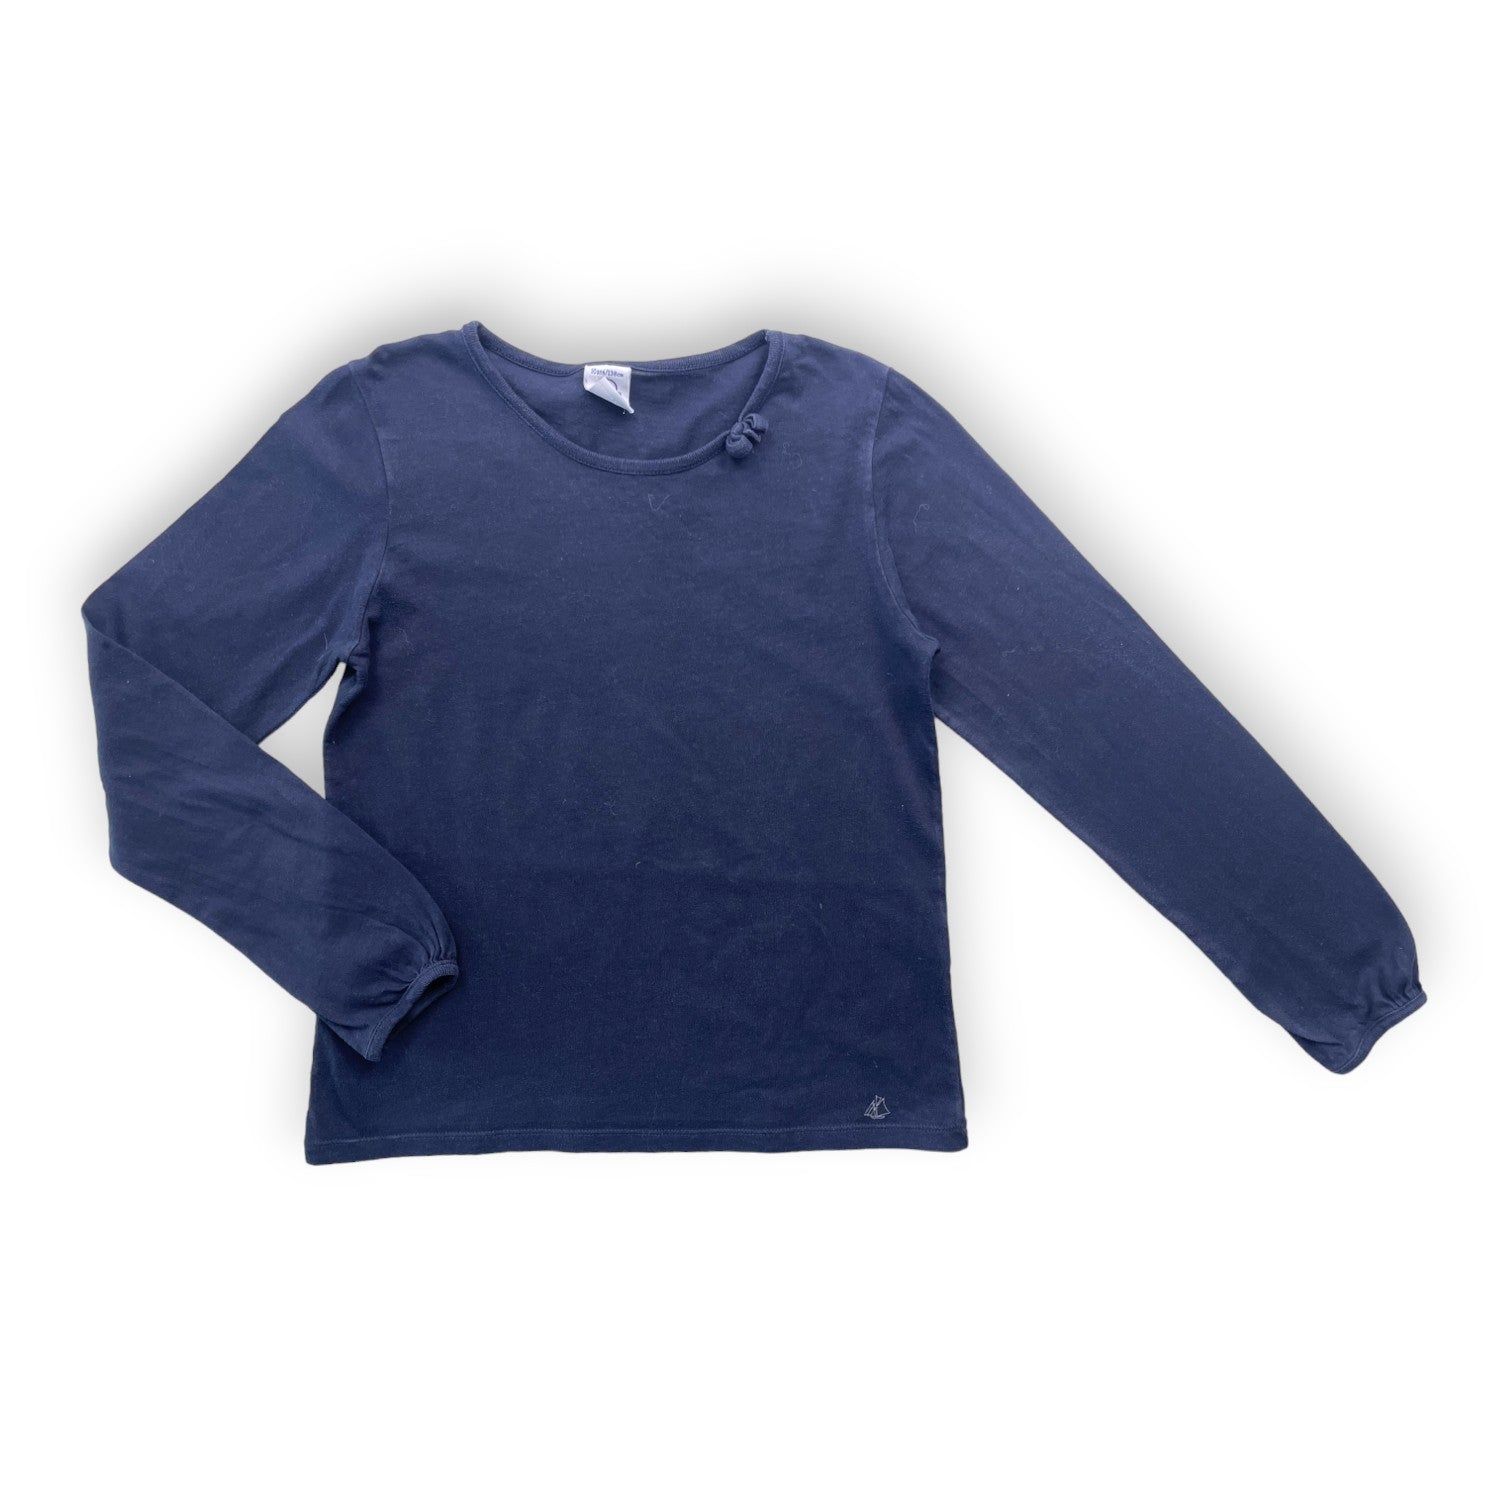 PETIT BATEAU - T shirt manches longues bleu marine - 10 ans